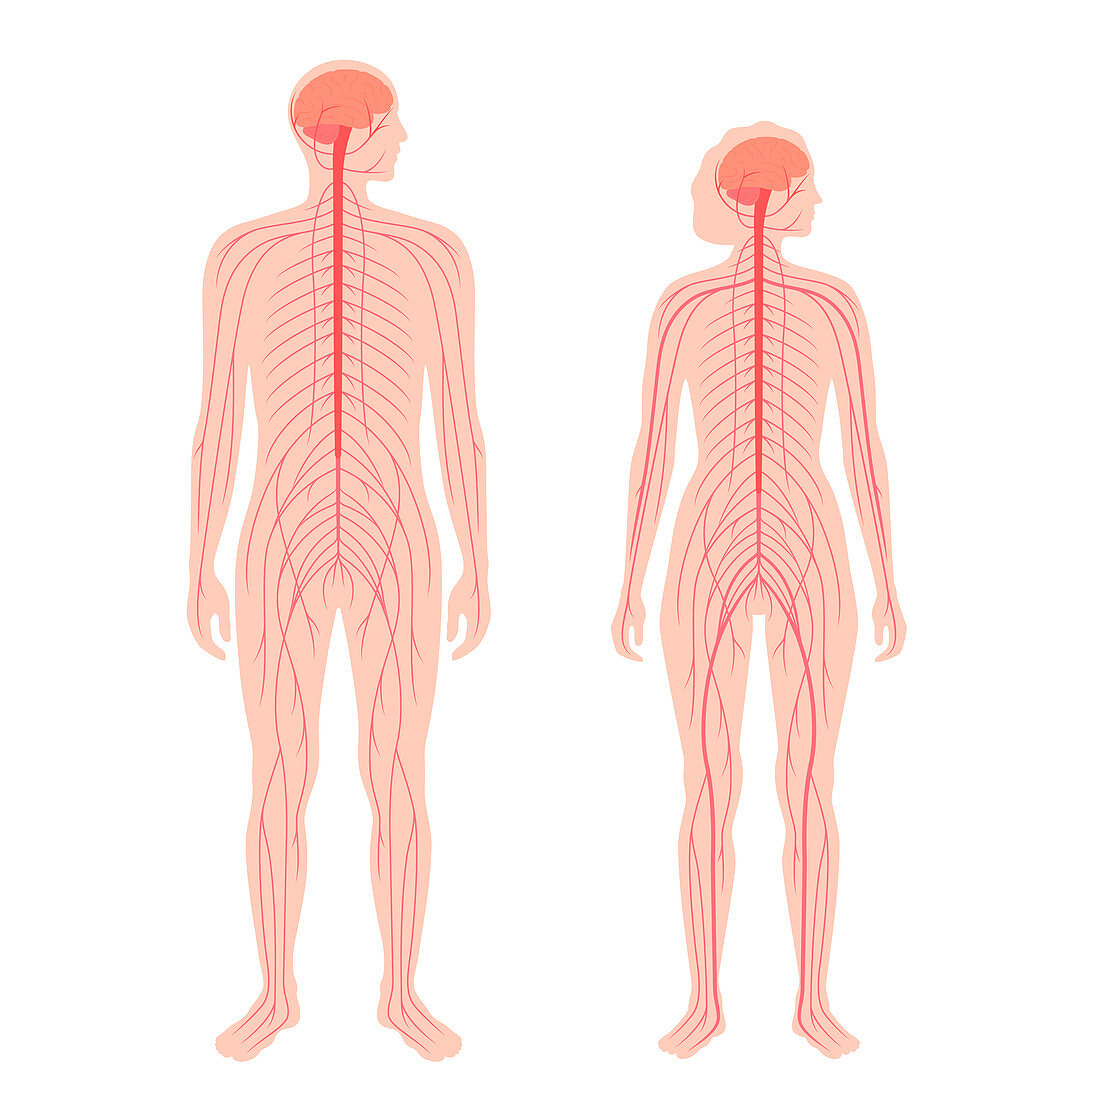 Central nervous system, illustration